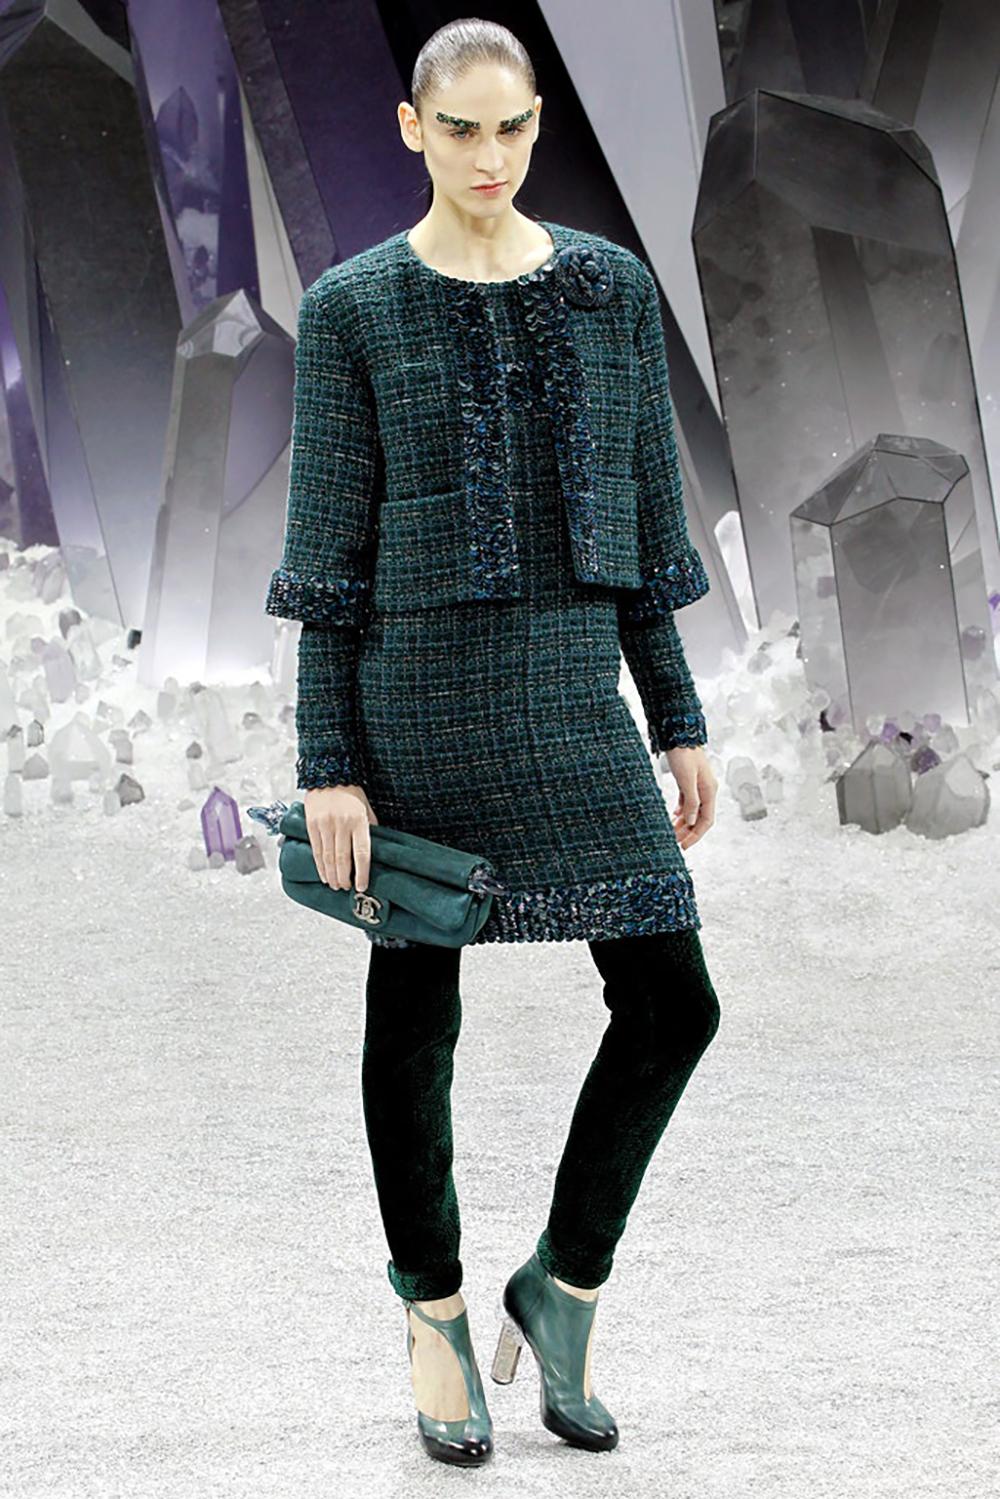 Boutique Preis 7,680$
Atemberaubendes smaragdgrünes Chanel Lesage Tweedkleid mit gestickten Akzenten.
- CC-Logo-Charme
- tonales Seidenfutter
Größenbezeichnung 36 FR. Der Zustand ist tadellos.